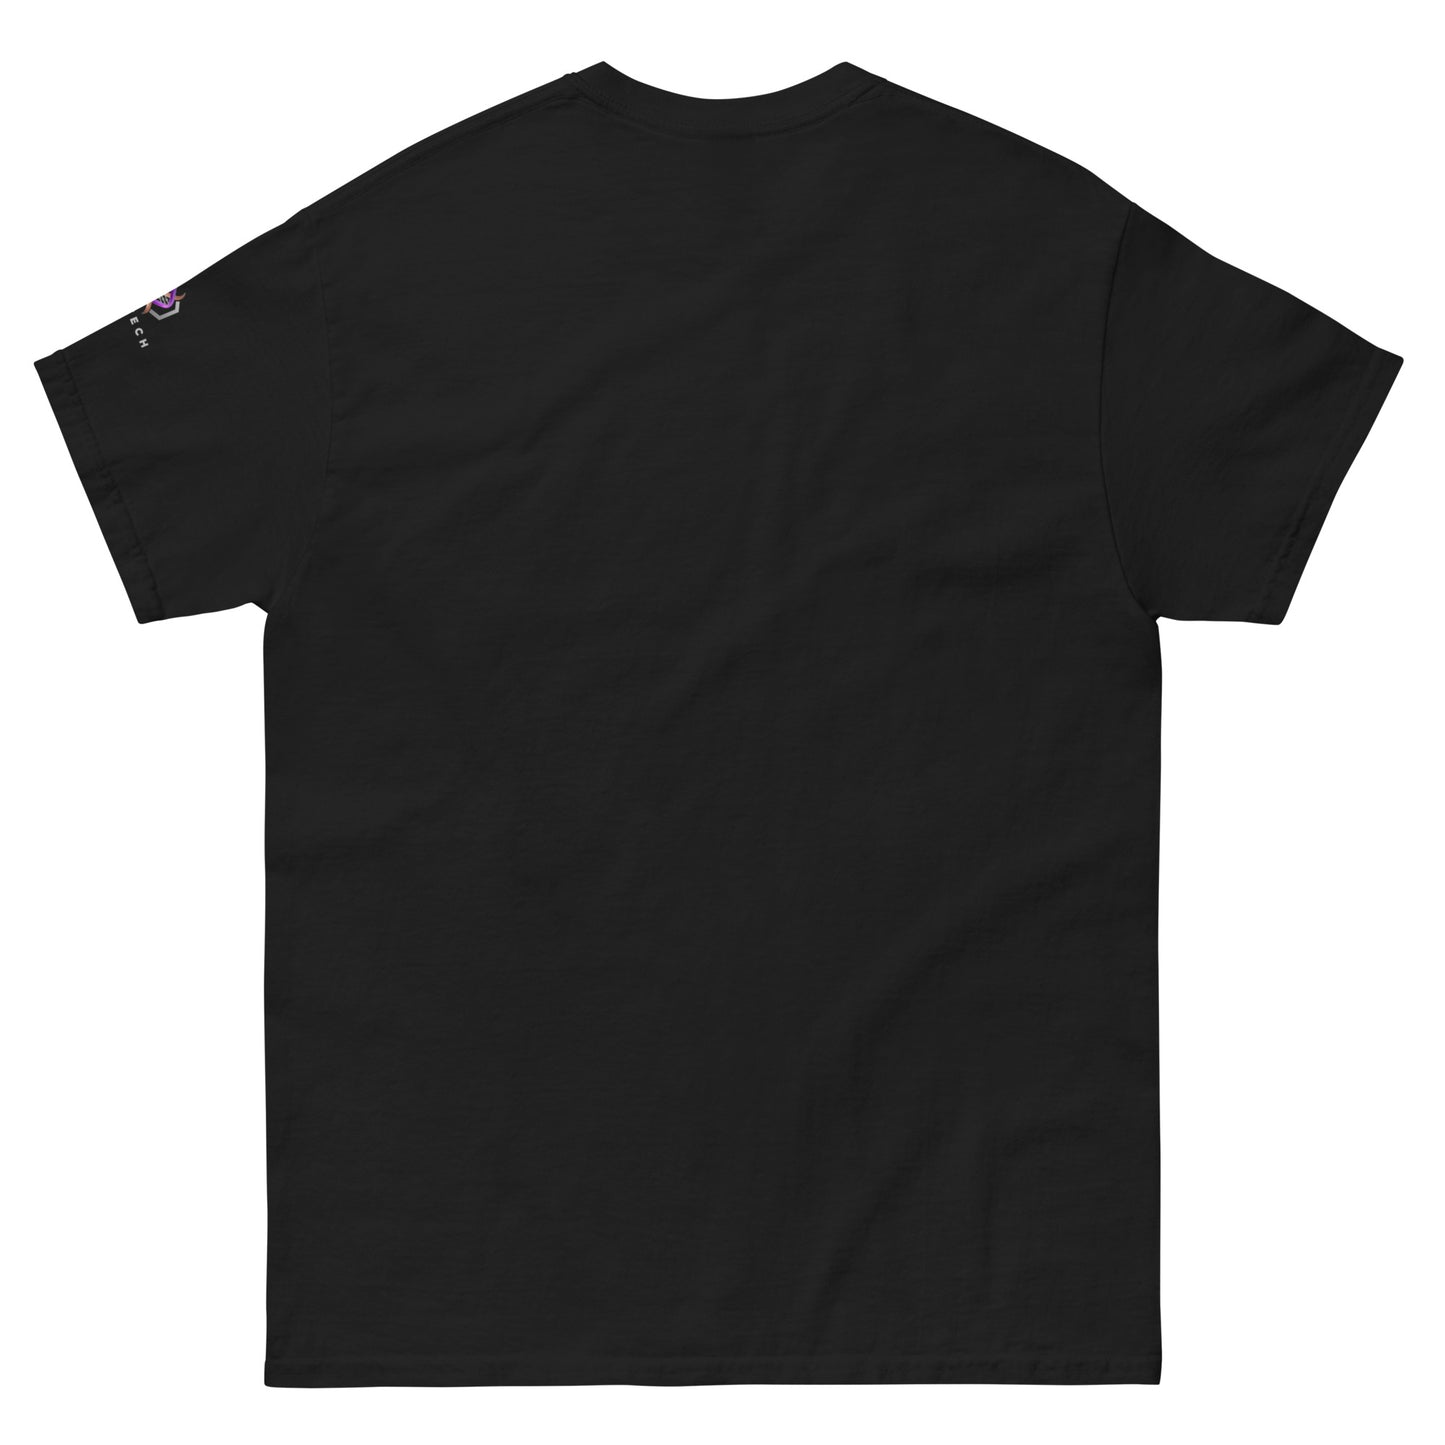 "1BTC = 1BTC" T-Shirt